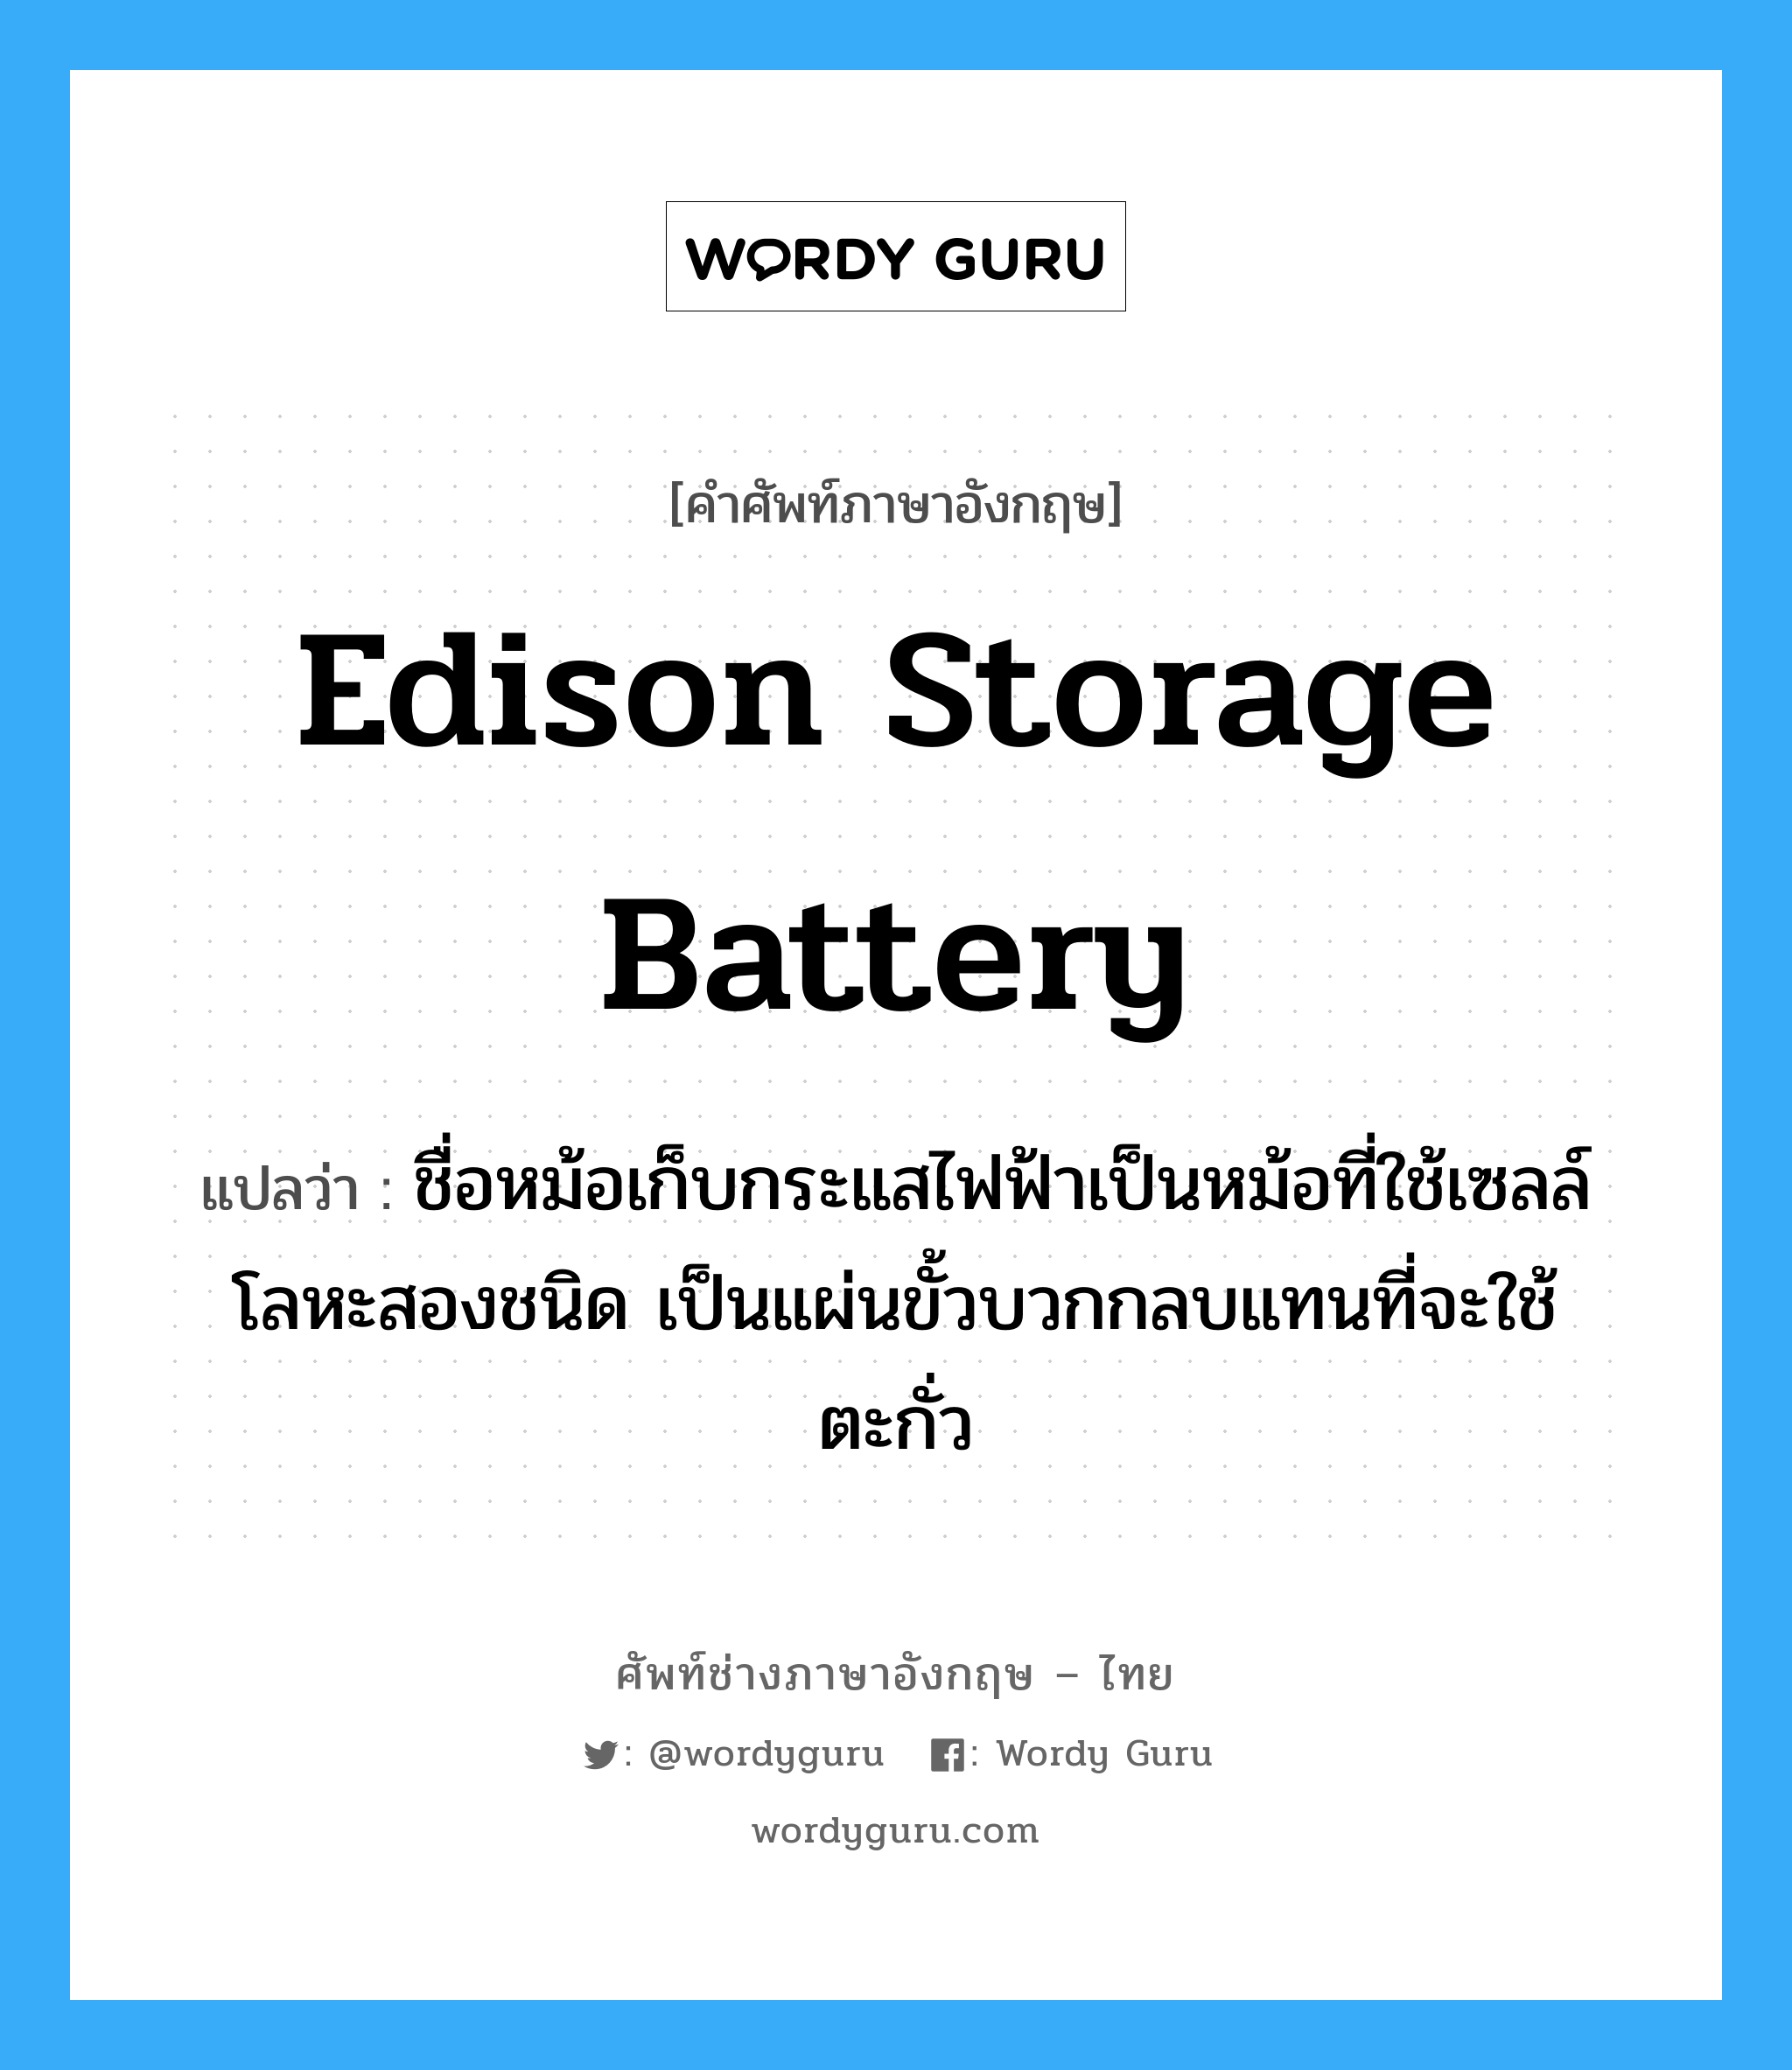 Edison storage battery แปลว่า?, คำศัพท์ช่างภาษาอังกฤษ - ไทย Edison storage battery คำศัพท์ภาษาอังกฤษ Edison storage battery แปลว่า ชื่อหม้อเก็บกระแสไฟฟ้าเป็นหม้อที่ใช้เซลล์โลหะสองชนิด เป็นแผ่นขั้วบวกกลบแทนที่จะใช้ตะกั่ว